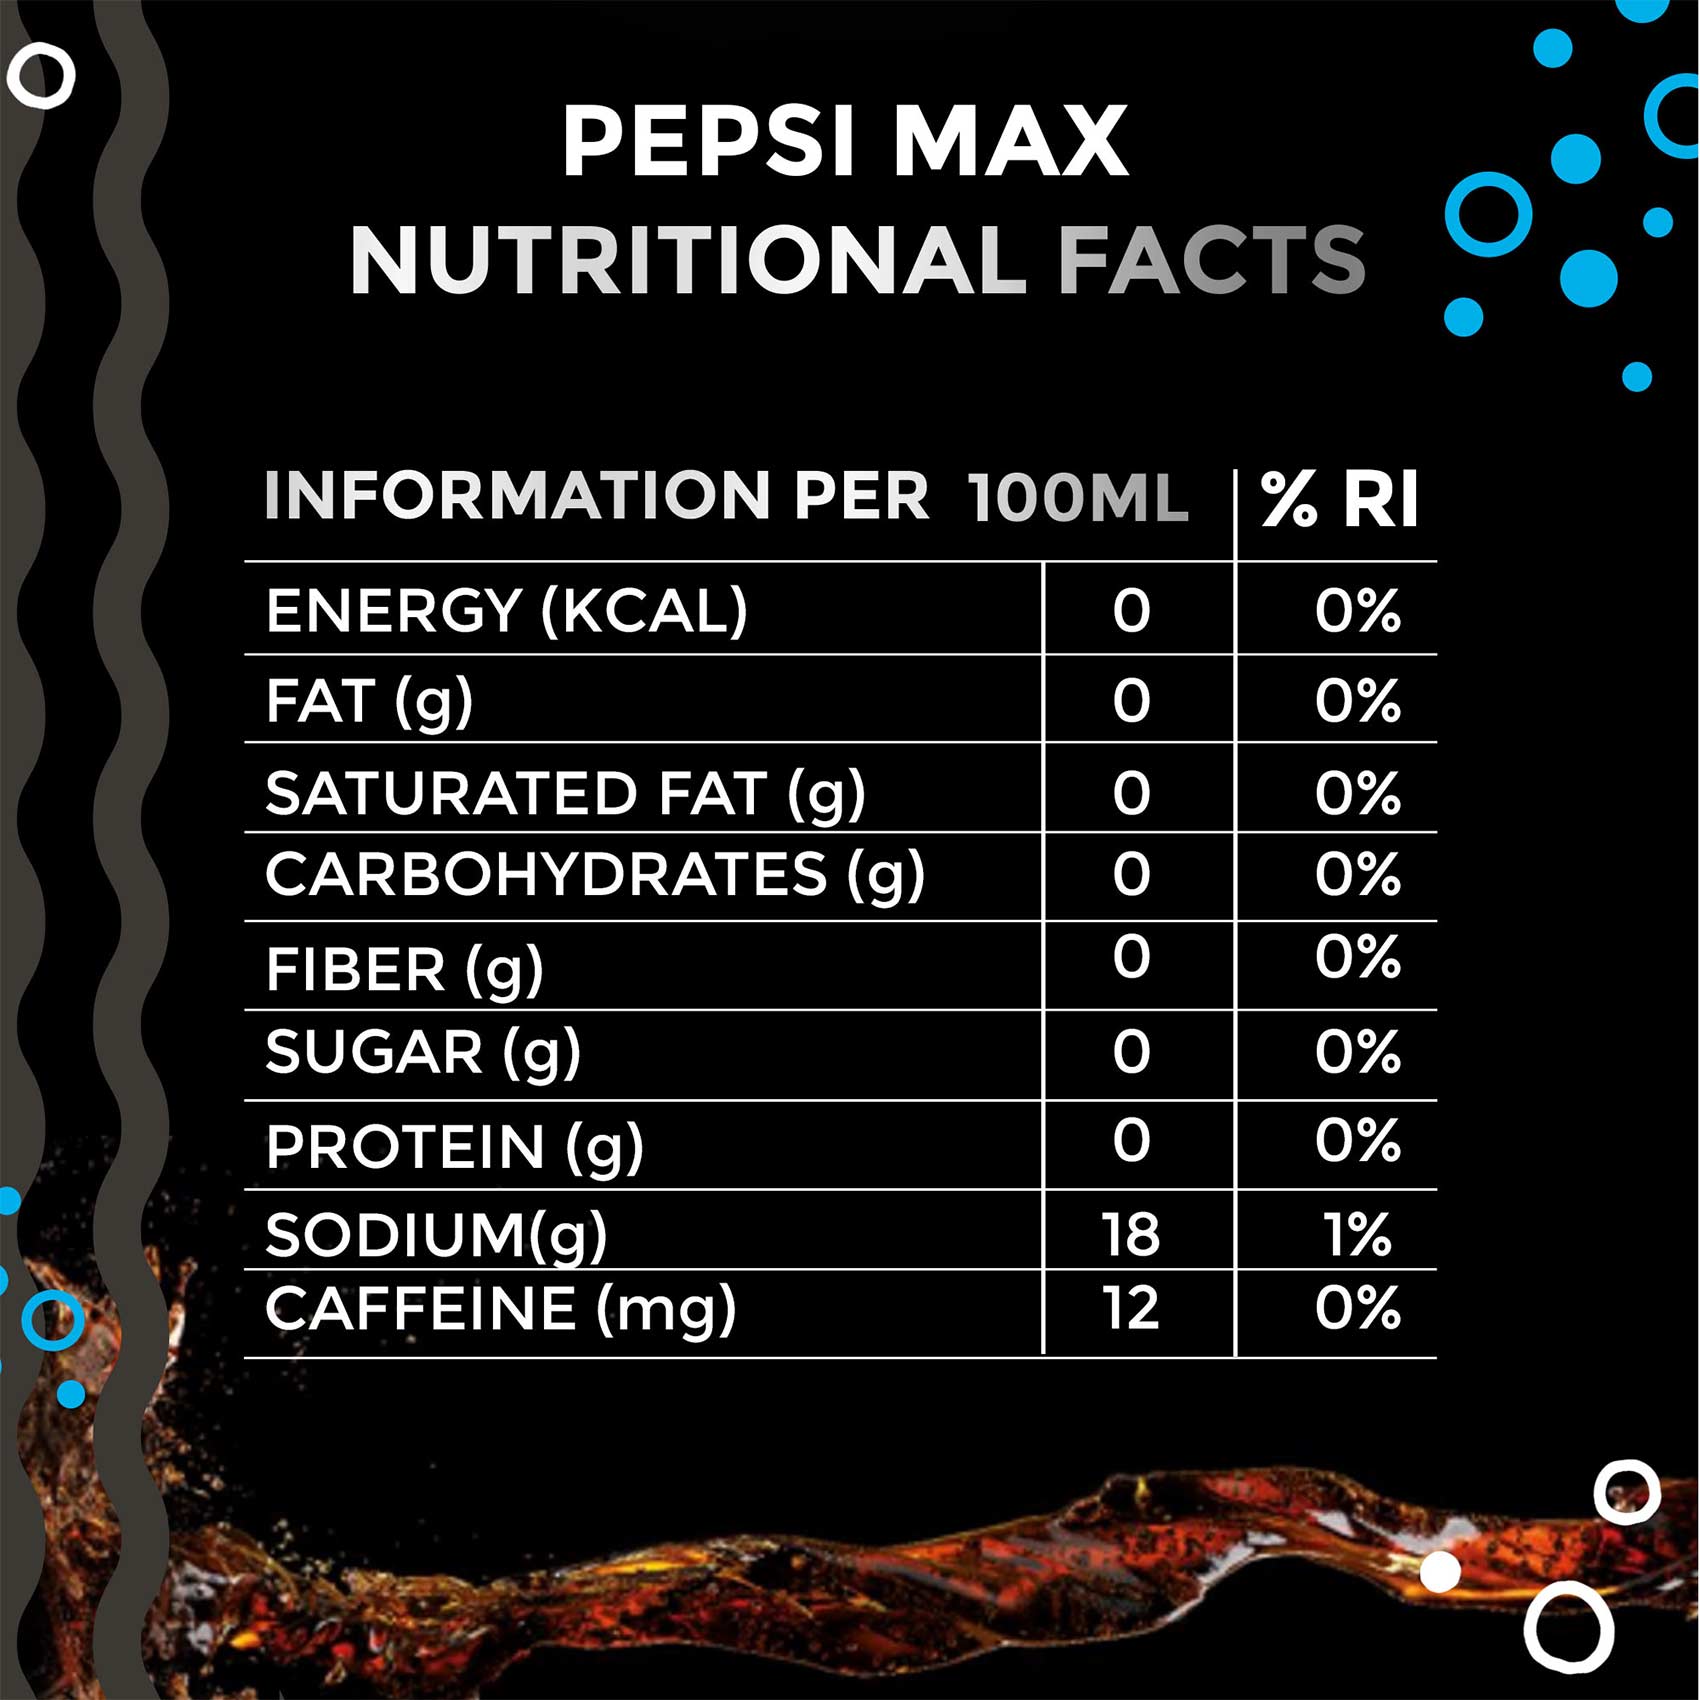 Pepsi Zero Sugar Can 320ml